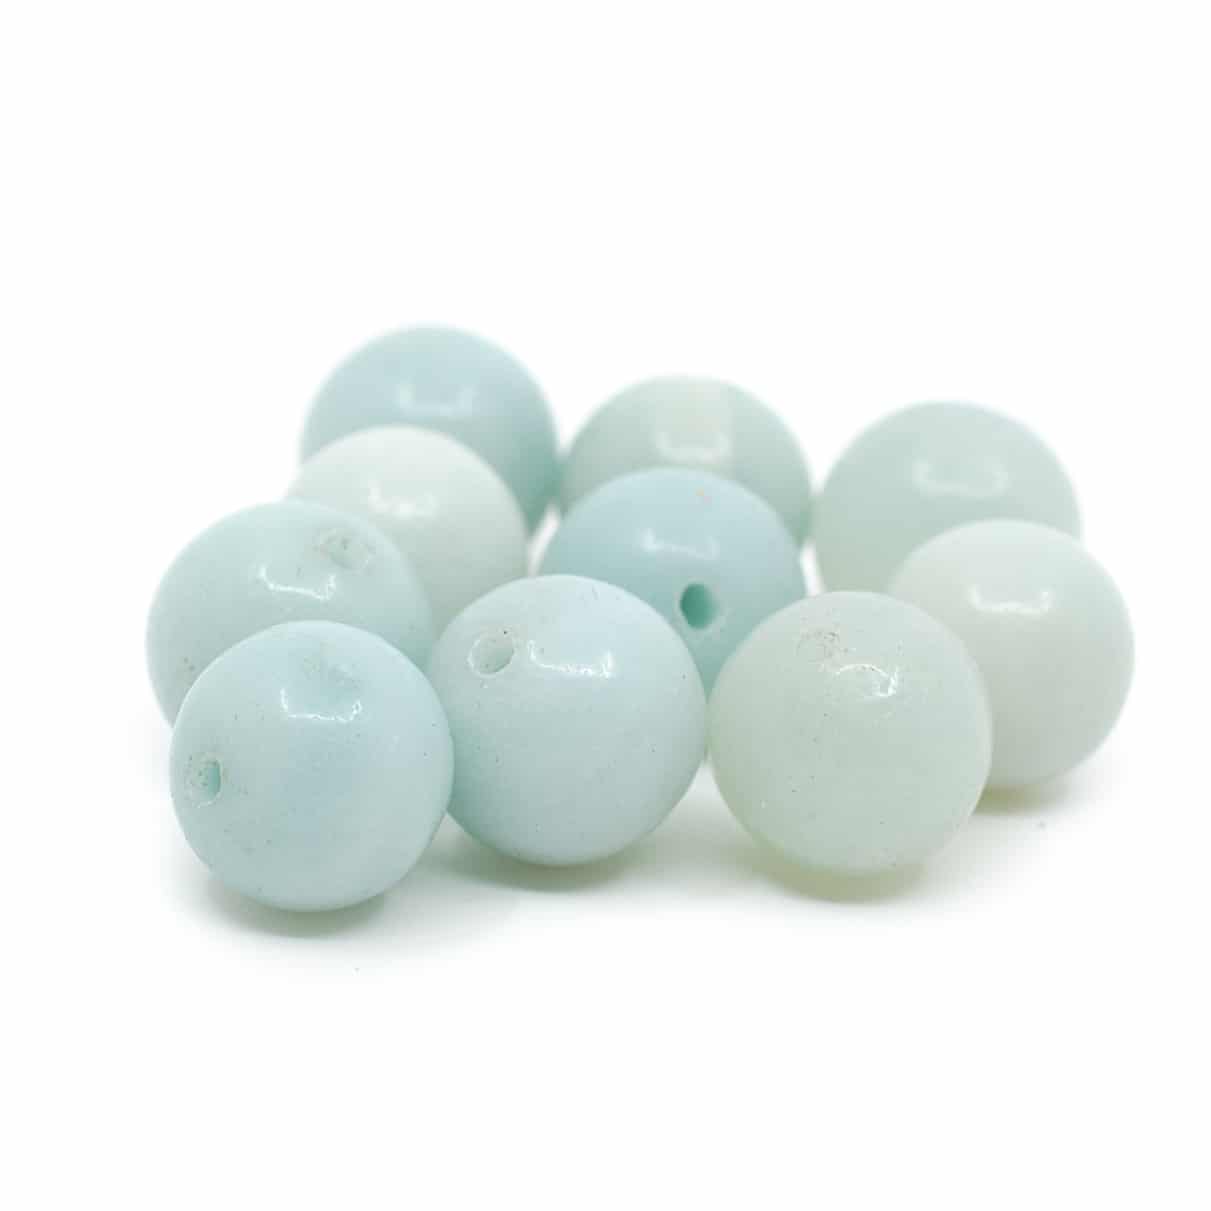 Edelstein Lose Perlen Amazonit - 10 Stück (10 mm)